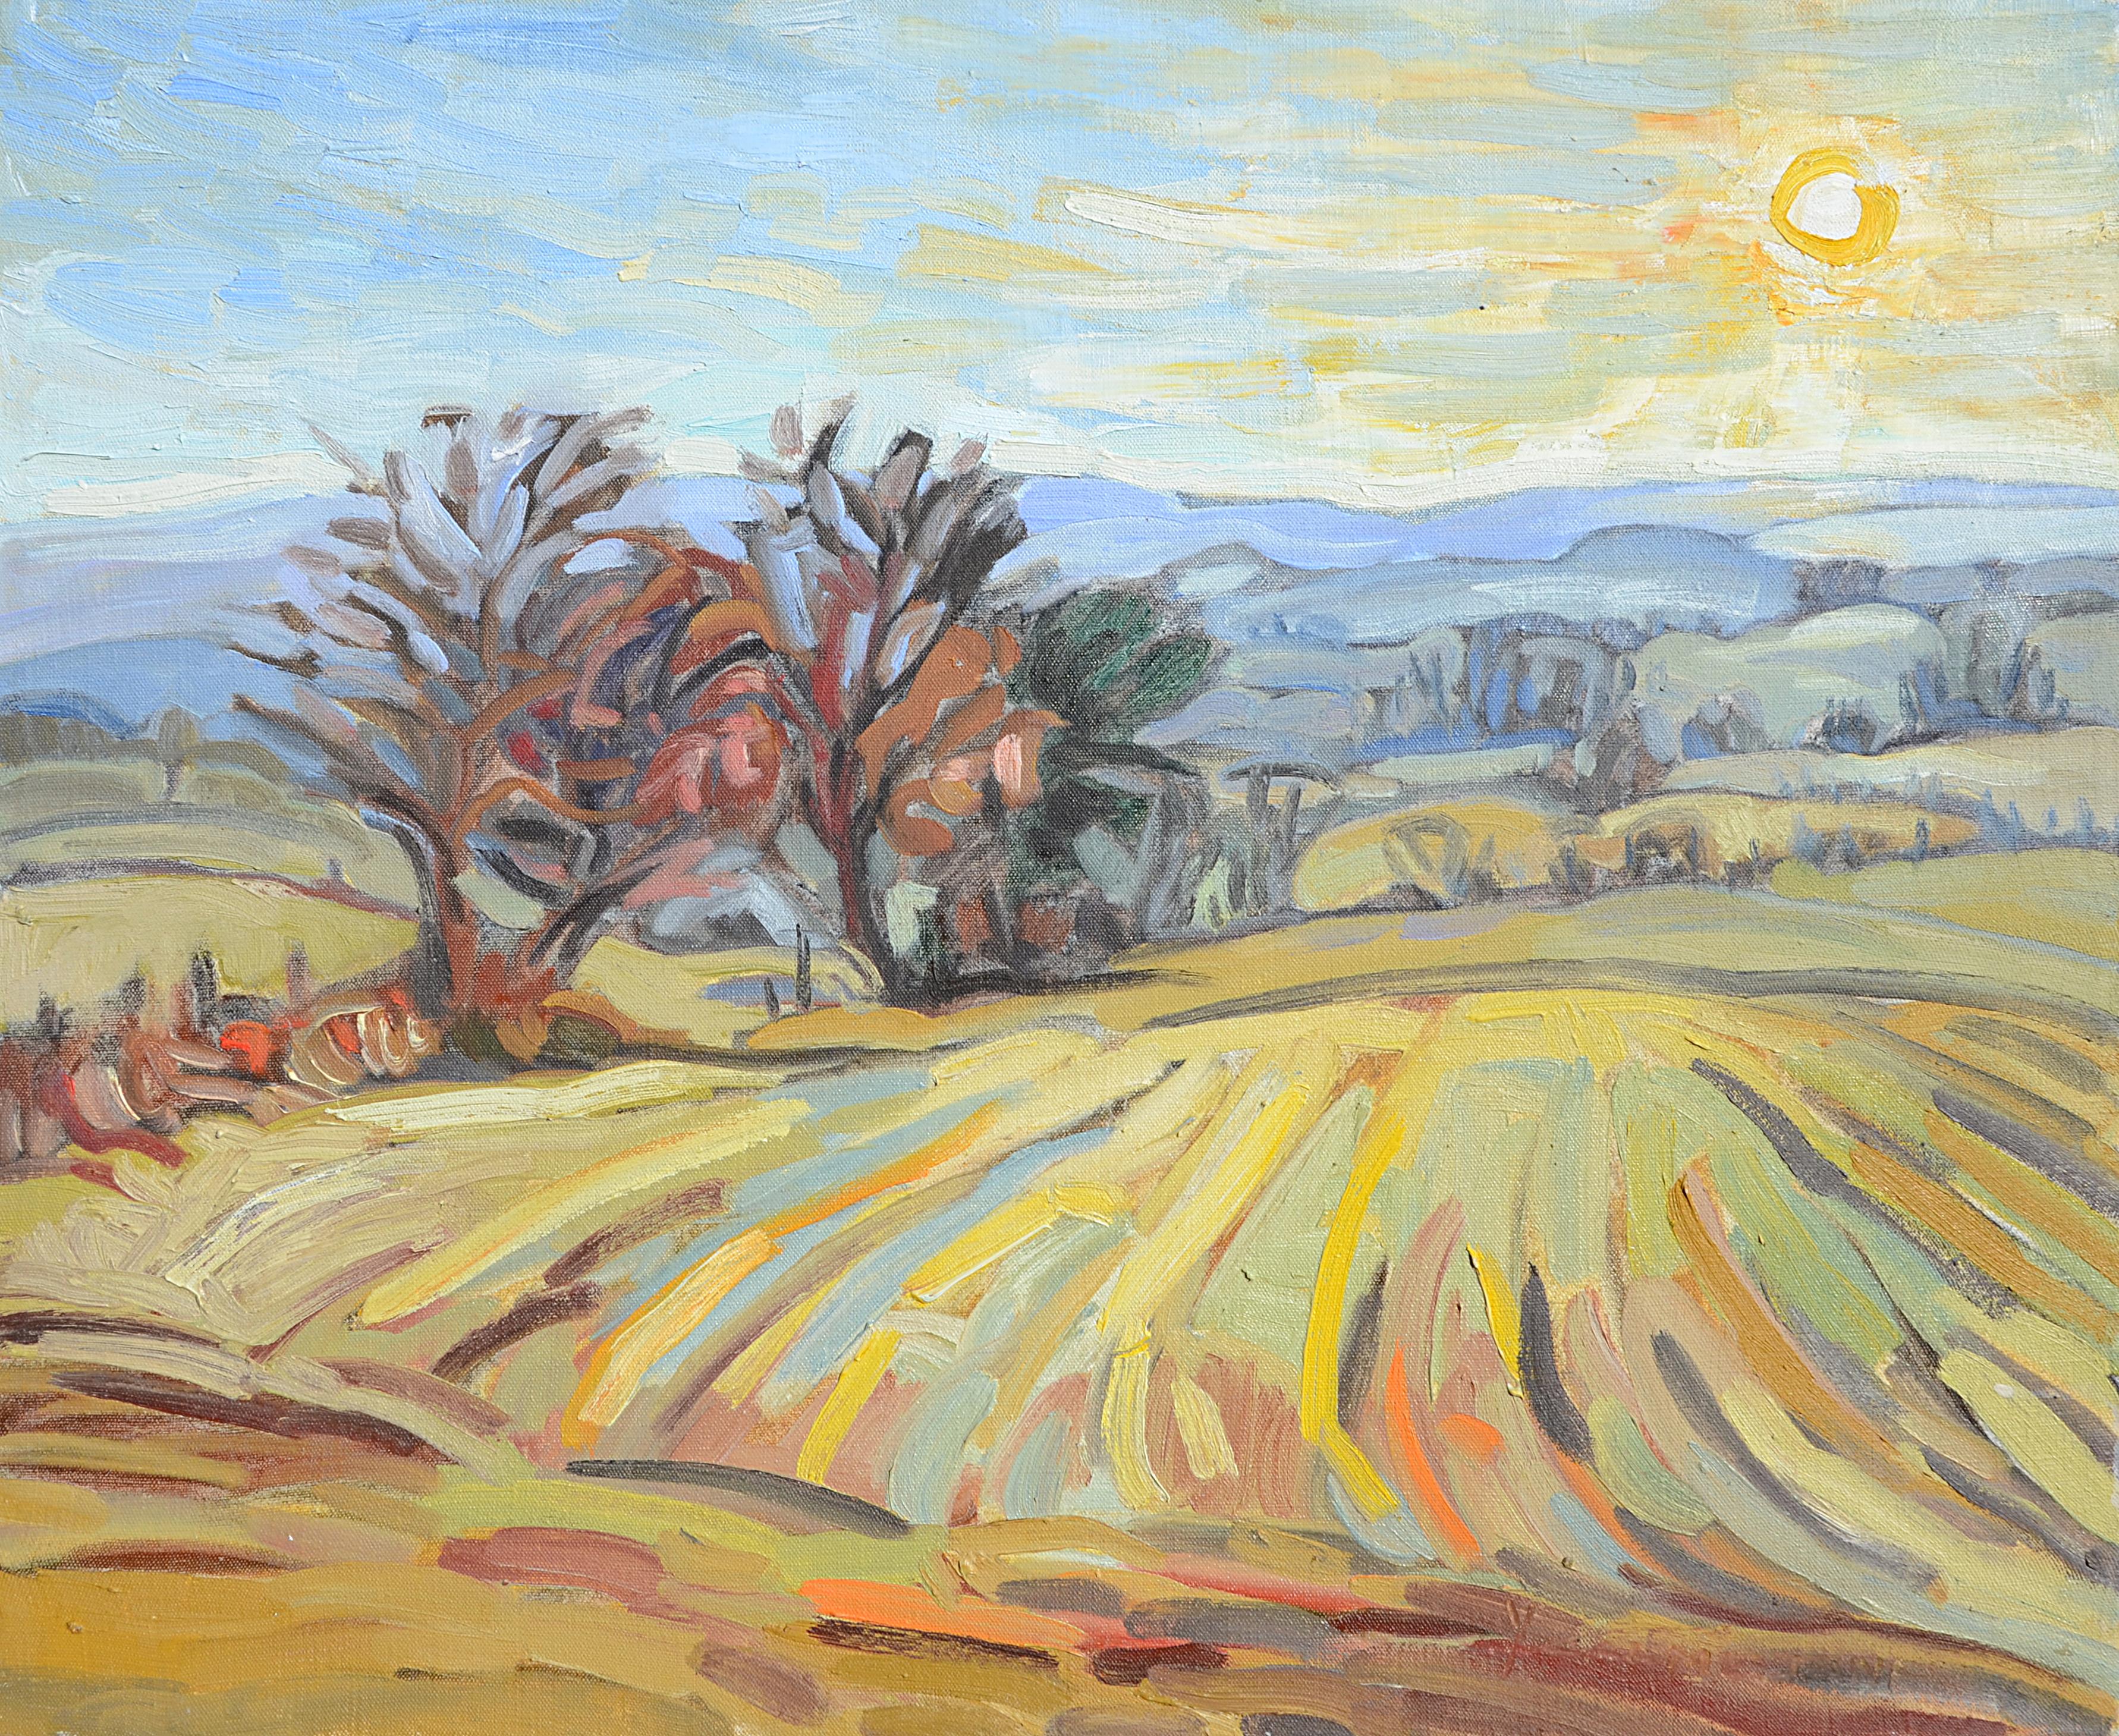 Yves Calméjane Landscape Painting - "Low Sun" ("Soleil bas"), Impressionist Landscape Oil Painting